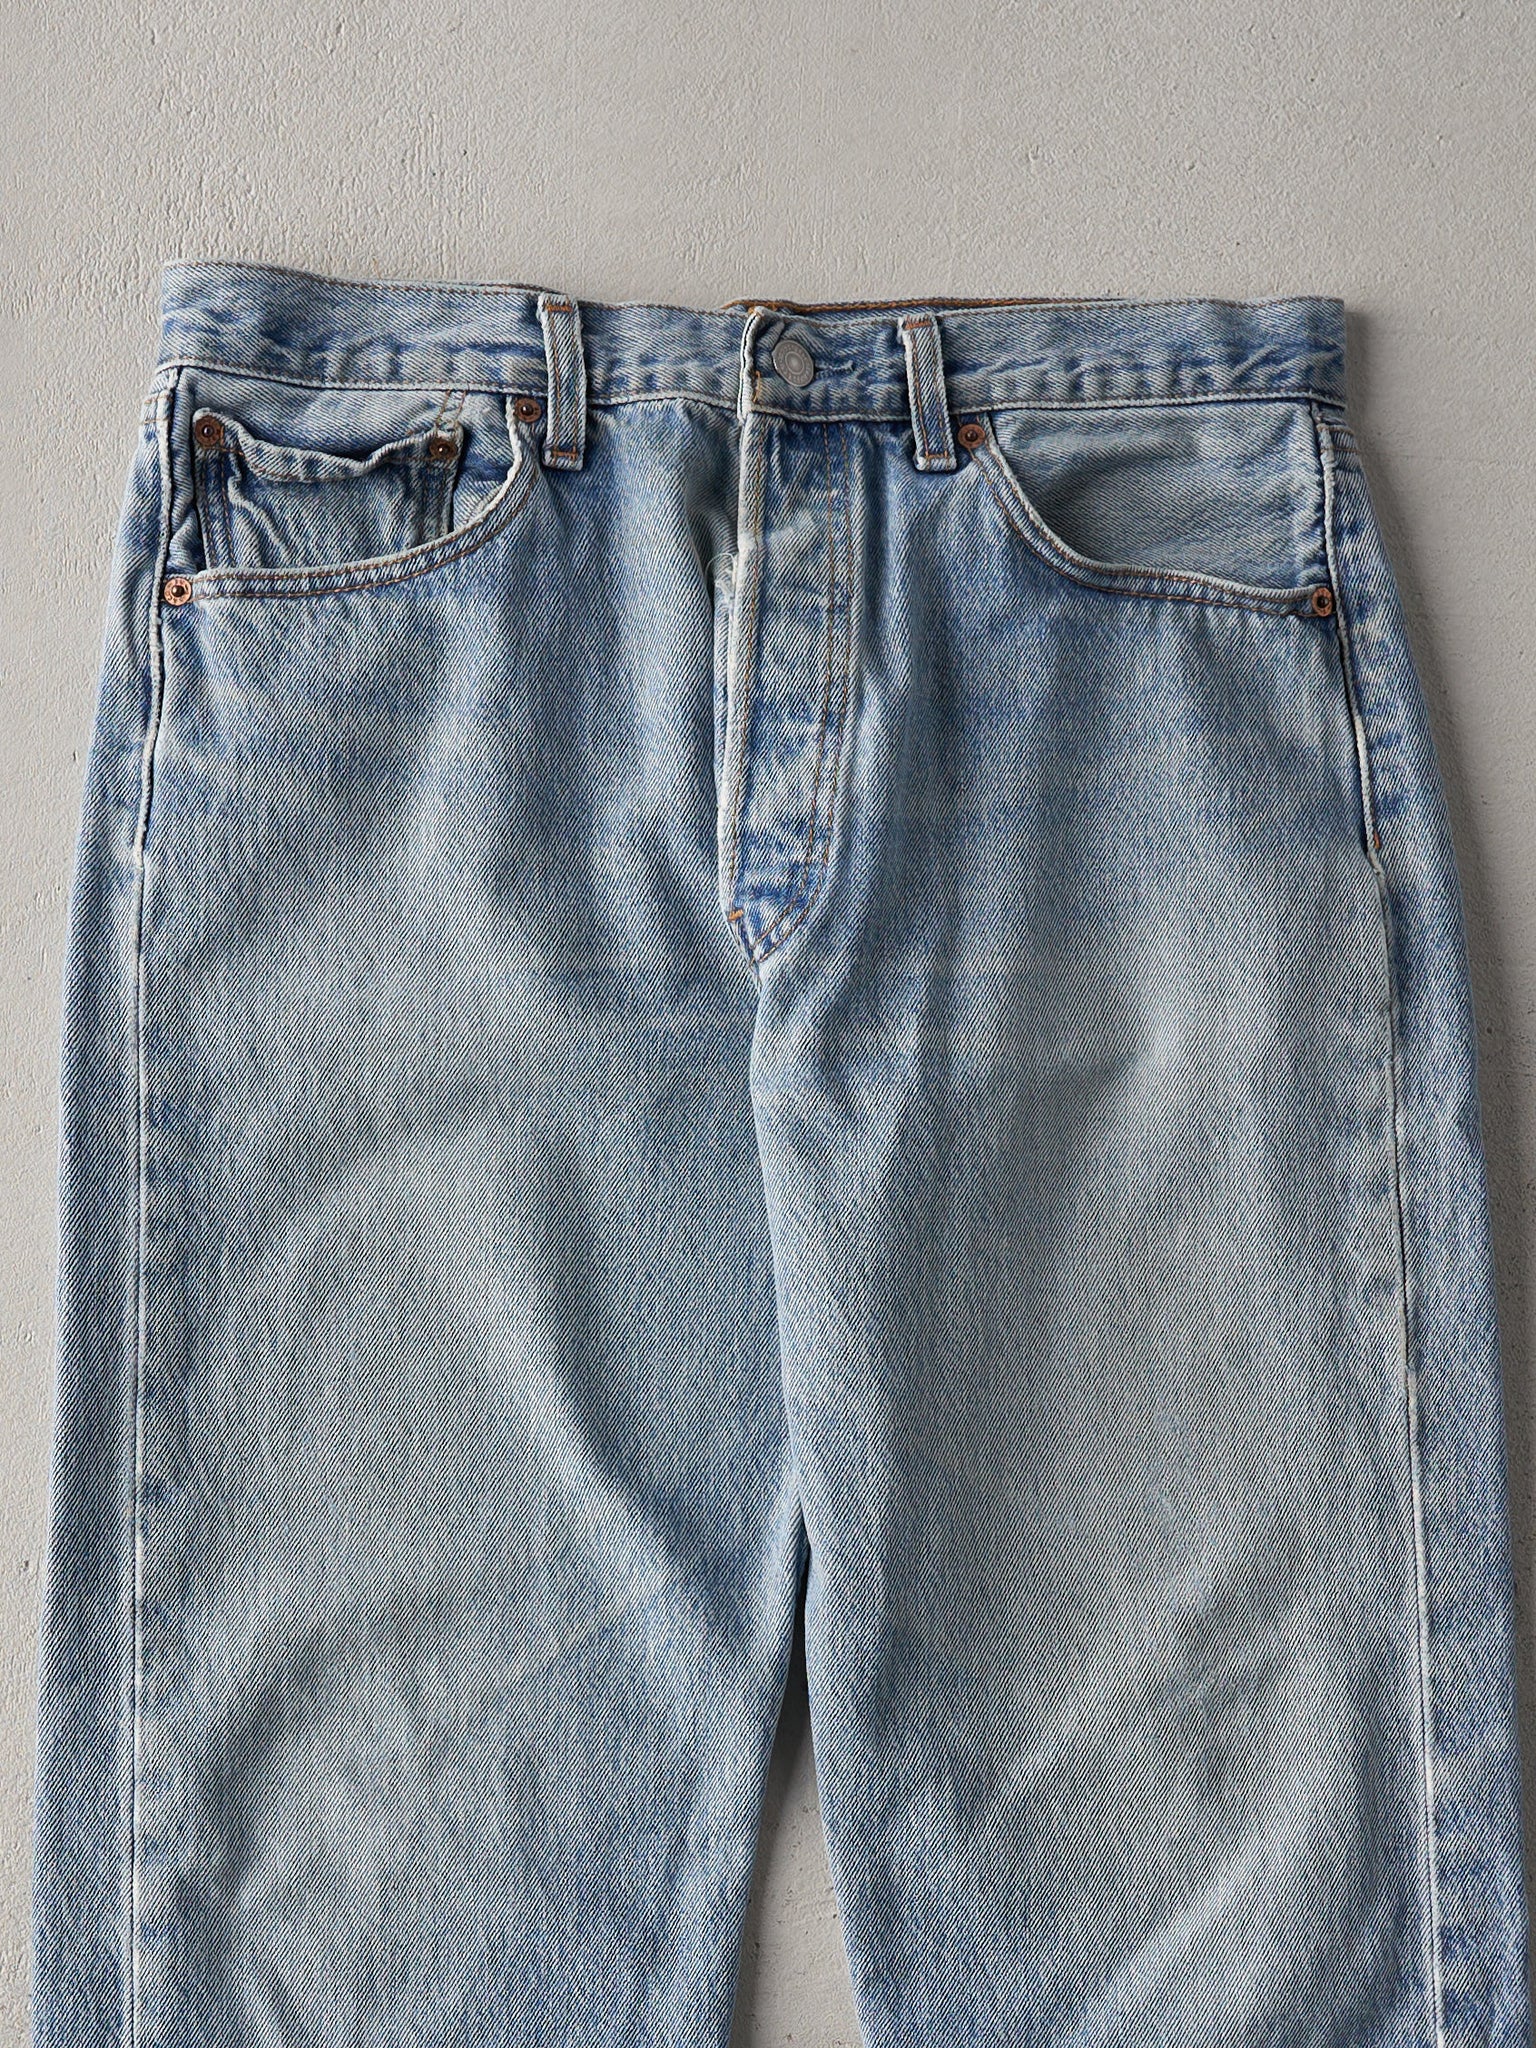 Vintage 80s Light Wash Levi's 501 Jeans (32x30.5)